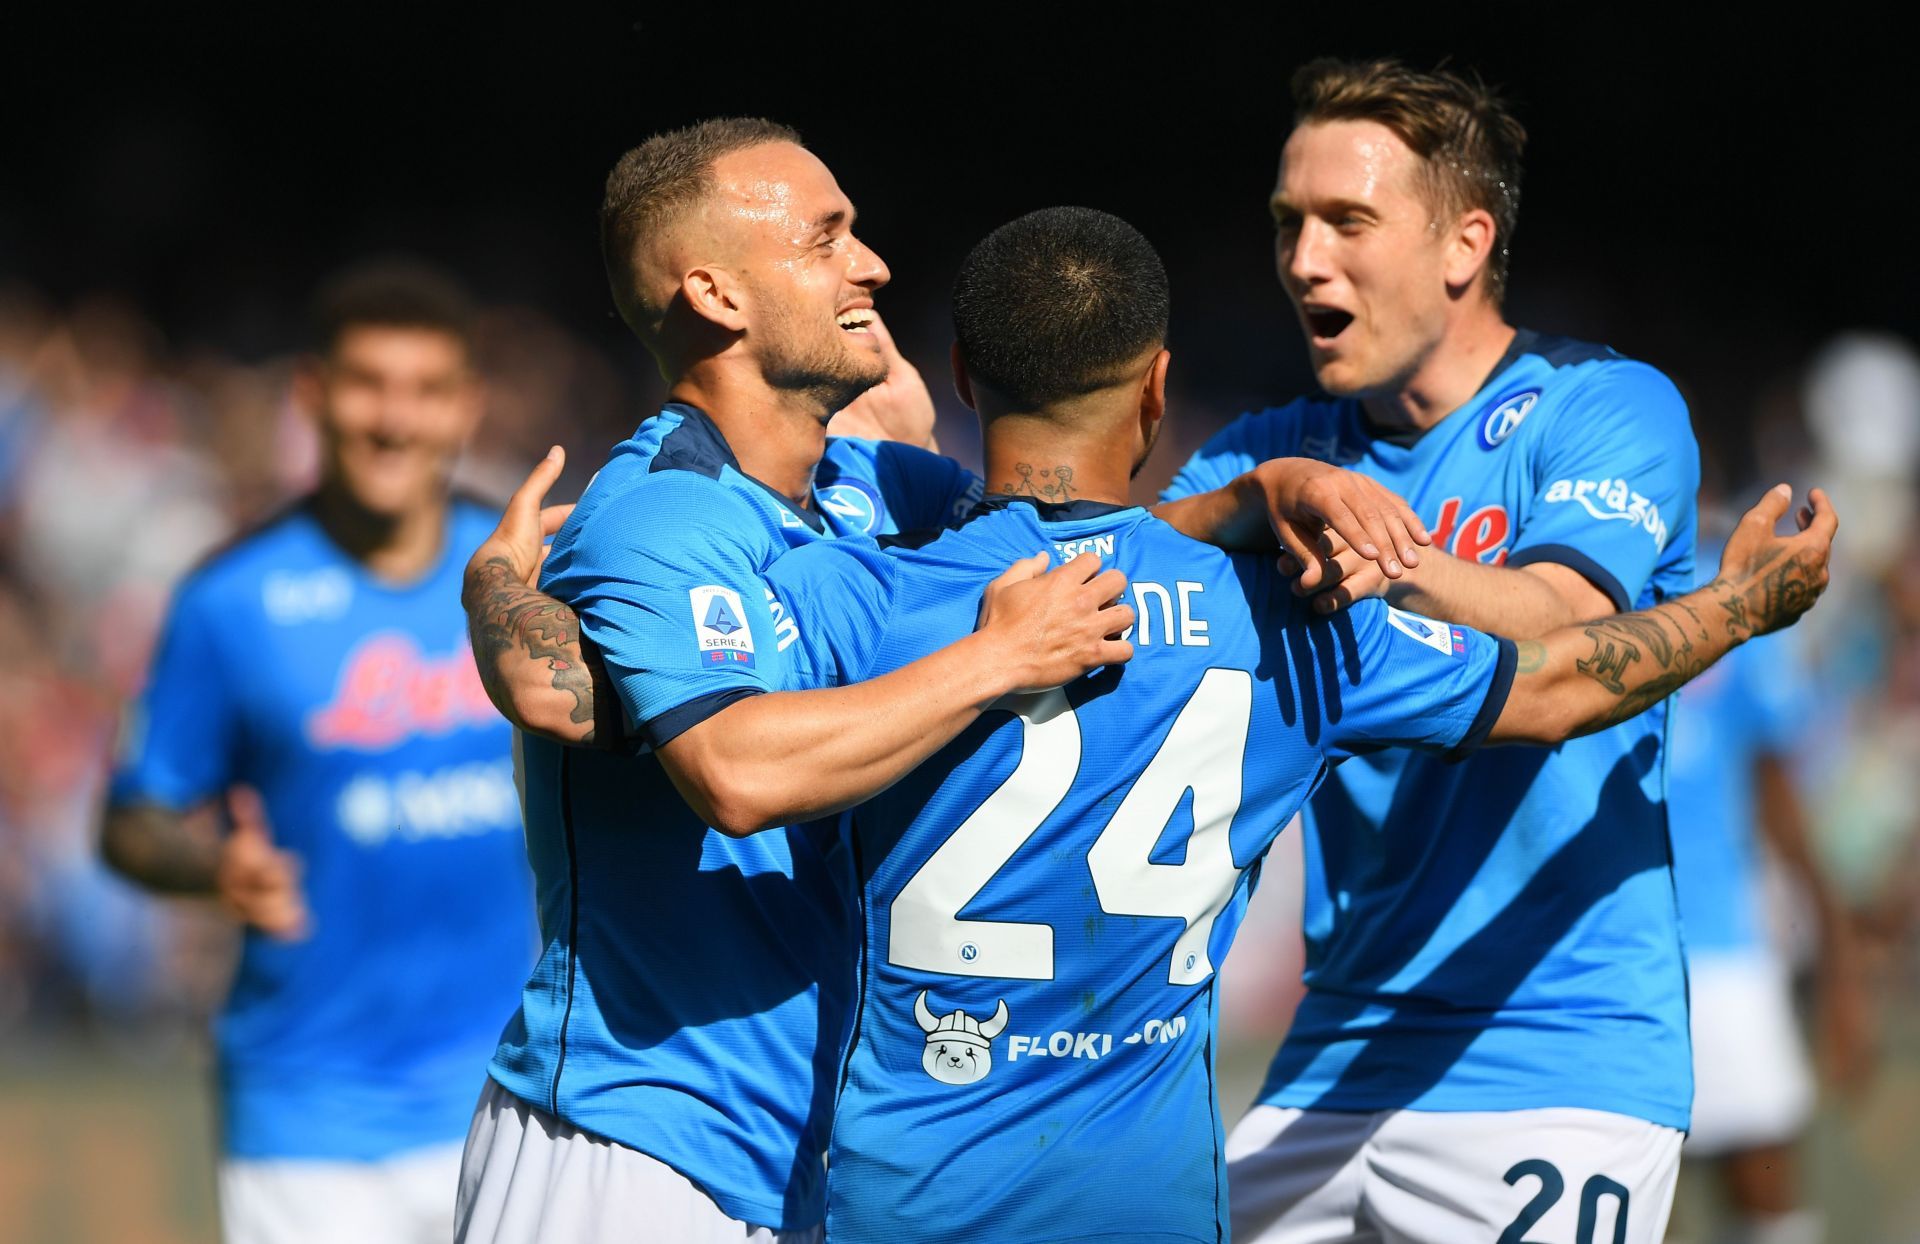 SSC Napoli will face Spezia on Saturday - Serie A